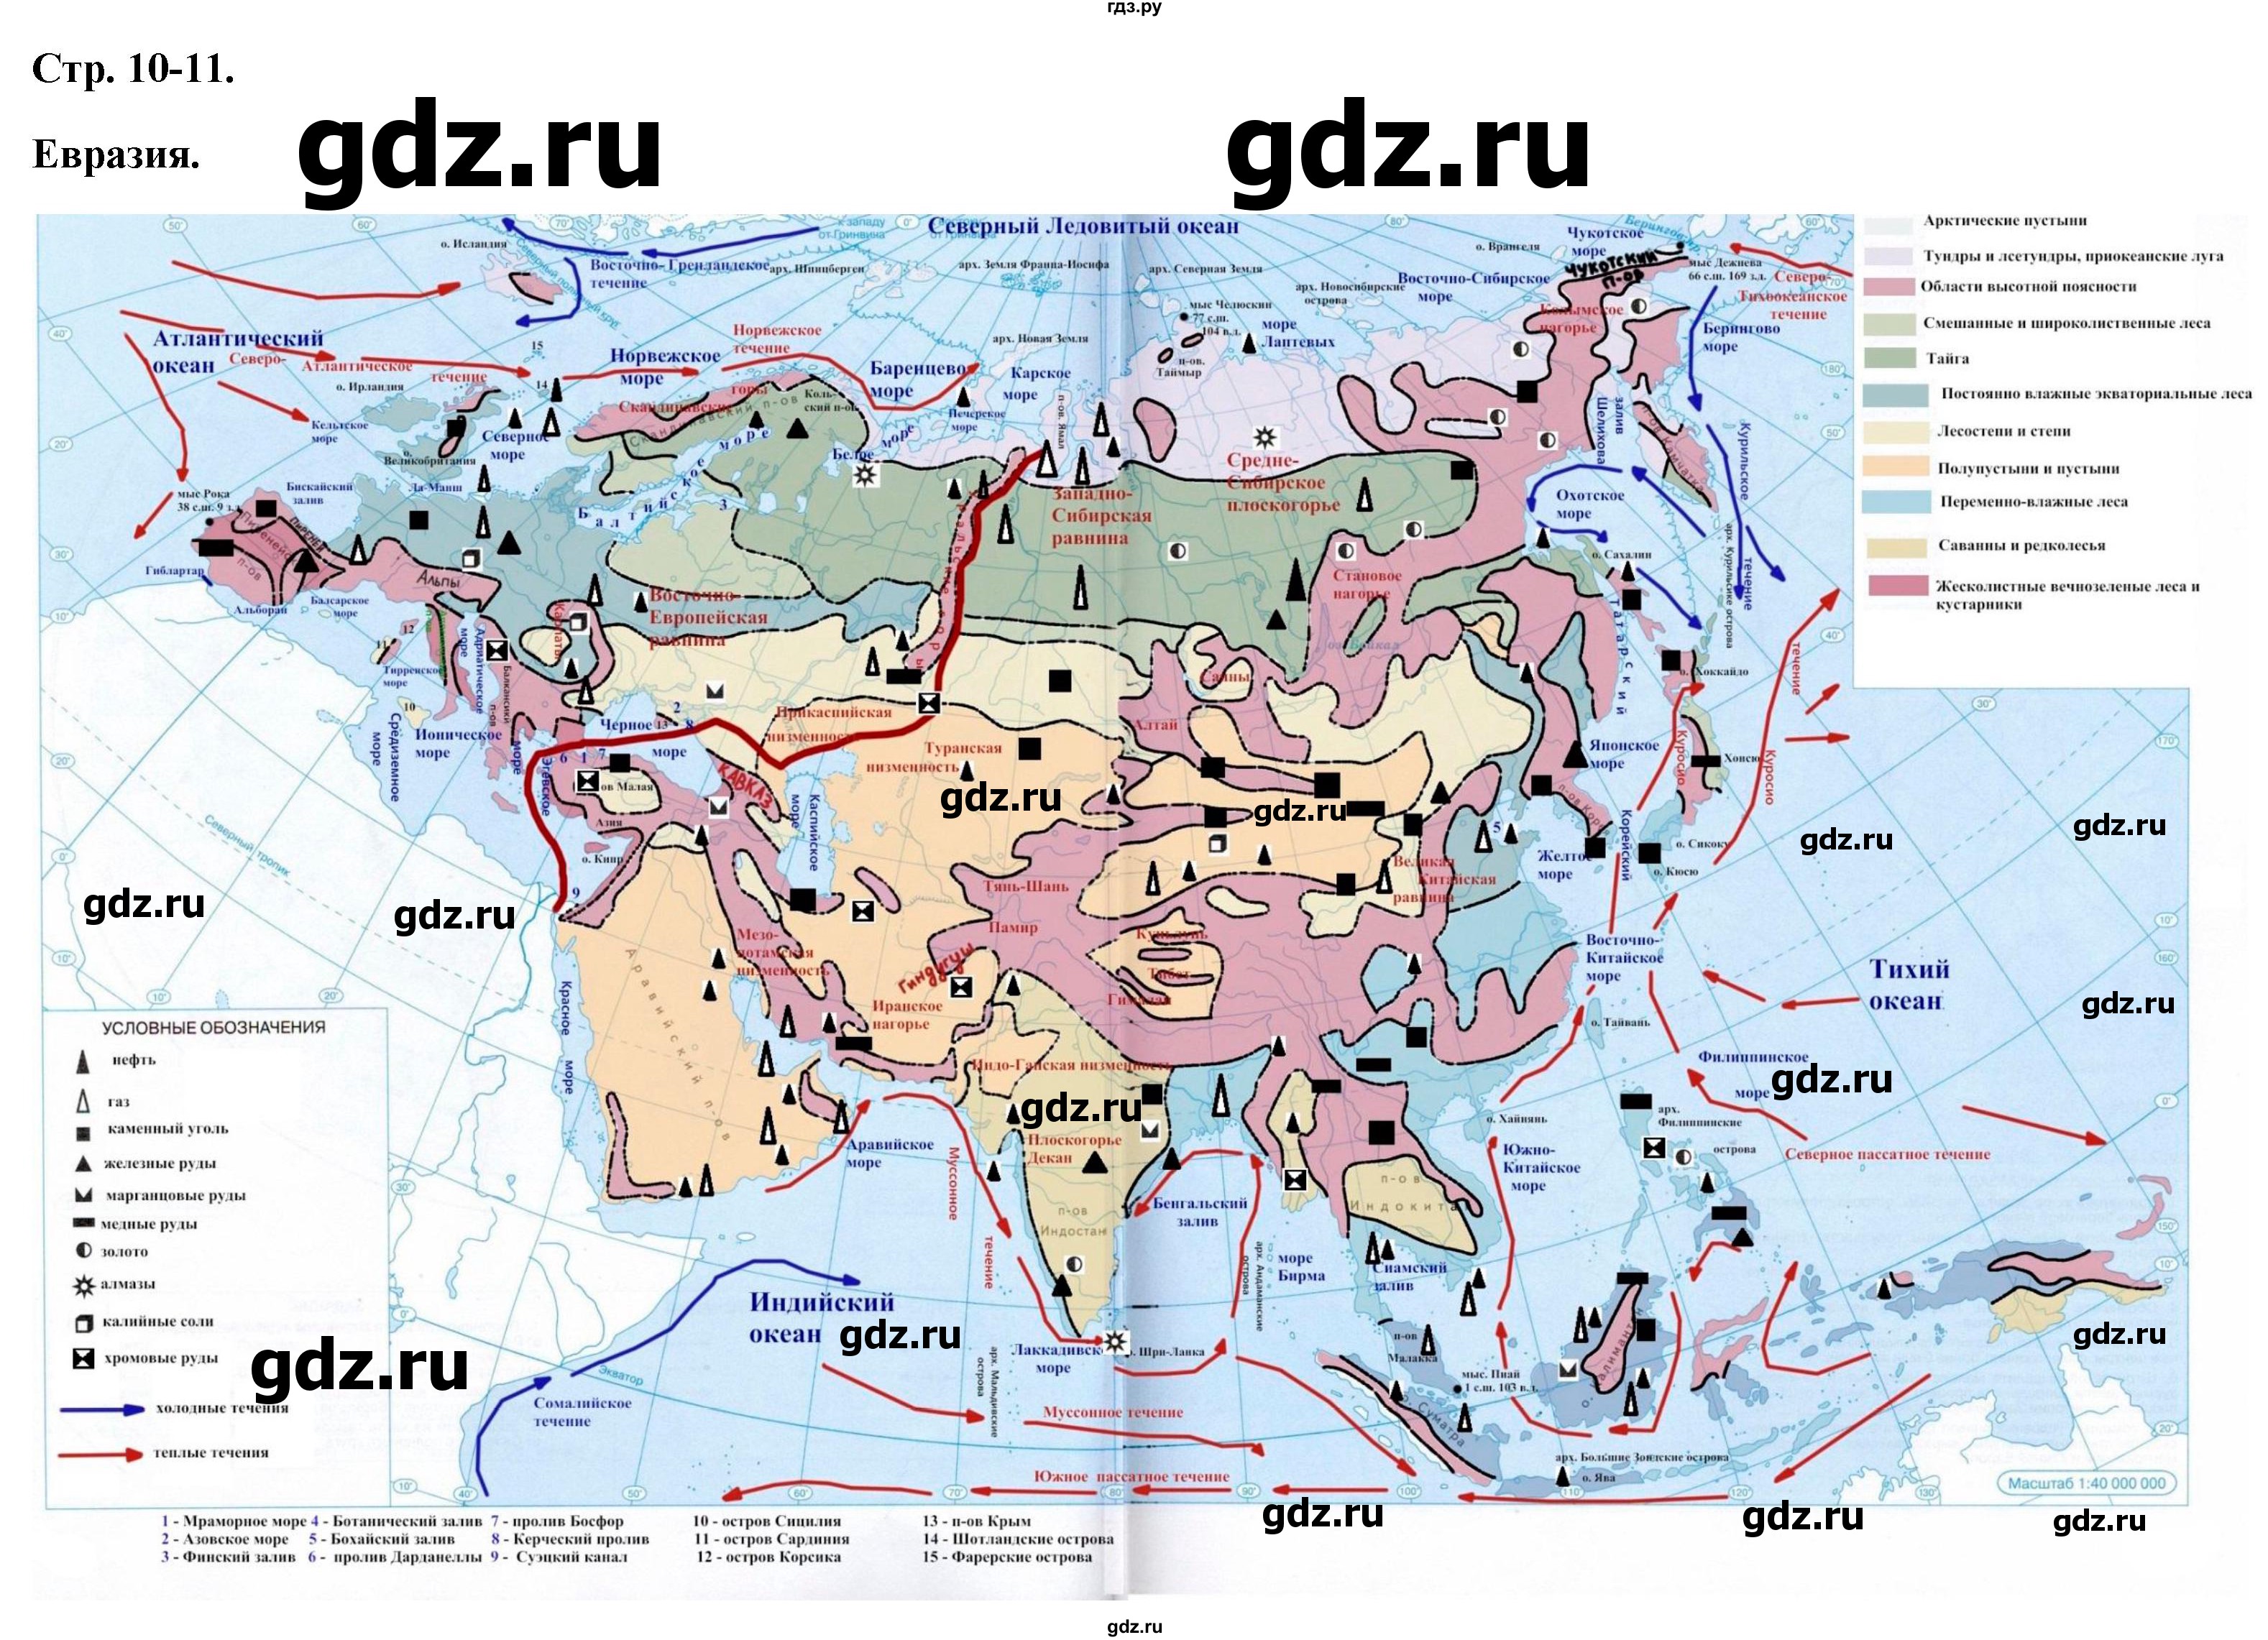 ГДЗ контурные карты стр.10-11 география 7 класс атлас с контурными картамиКурбский